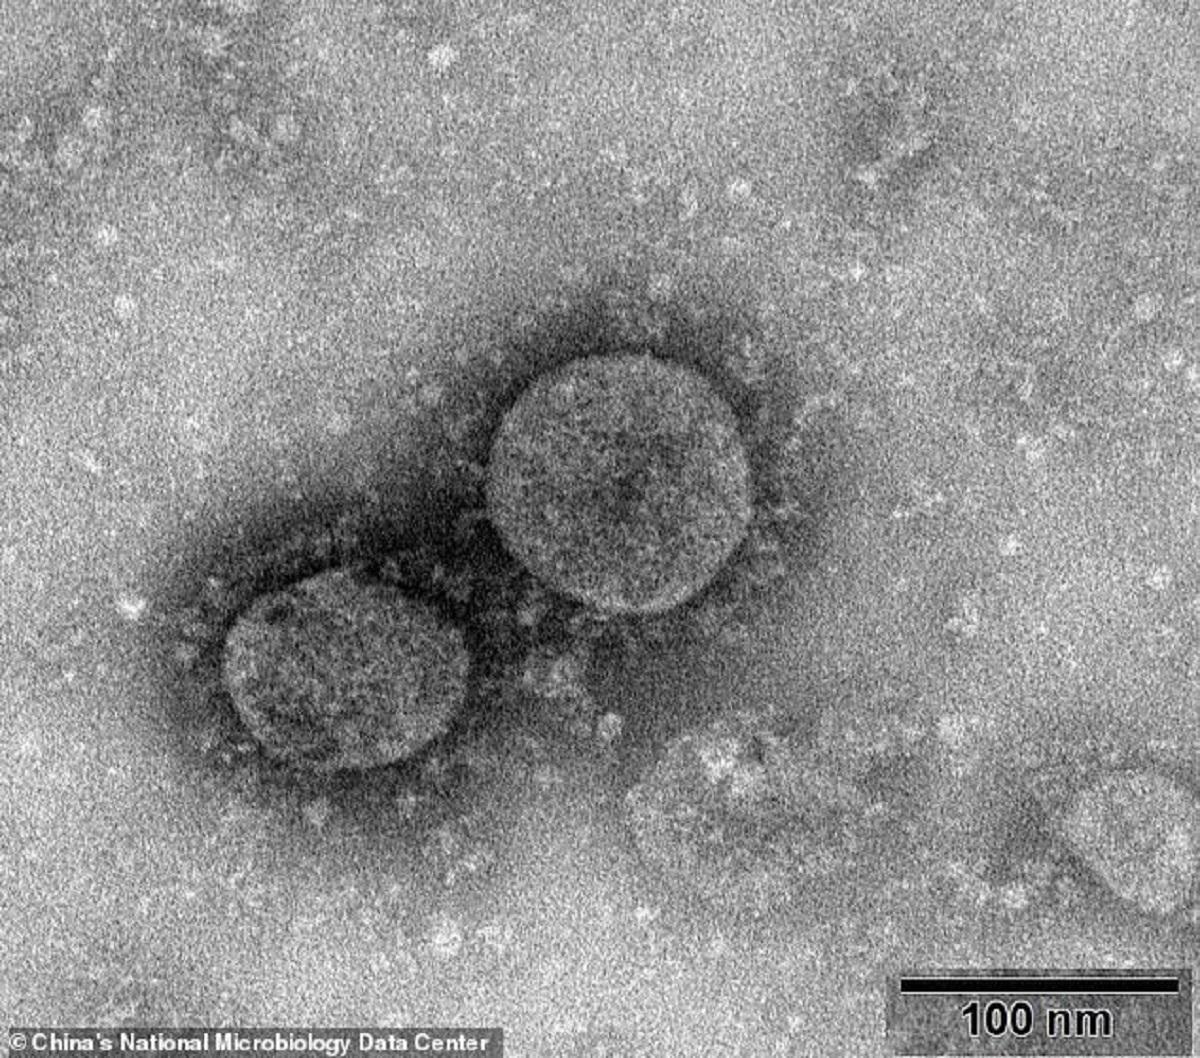 Imagini cu virusul care a ucis, până în prezent, 107 oameni şi a infectat peste 4.400